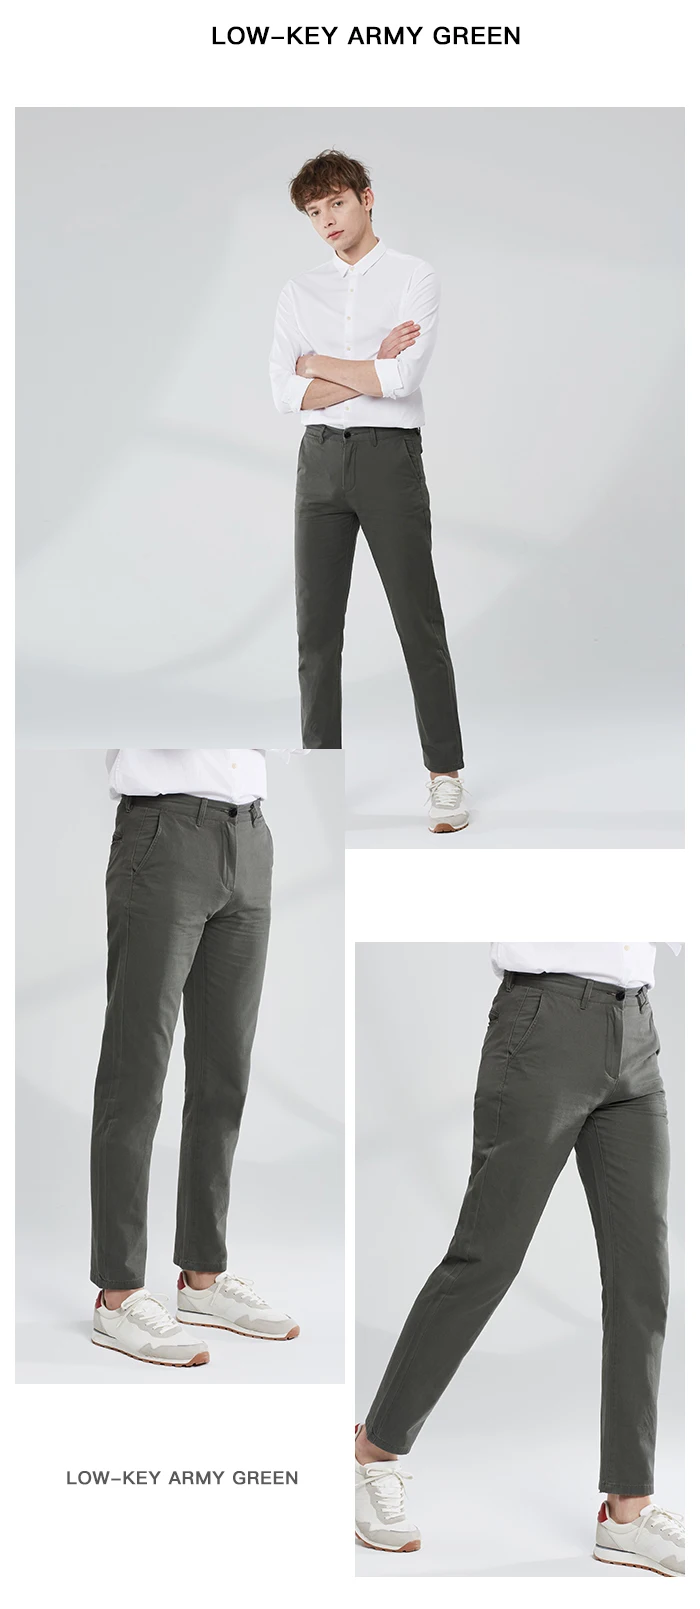 Markless хлопковые брюки Для мужчин весна прямые Повседневное Чино брюки многоцветные модные штаны для Для мужчин CLA9807M